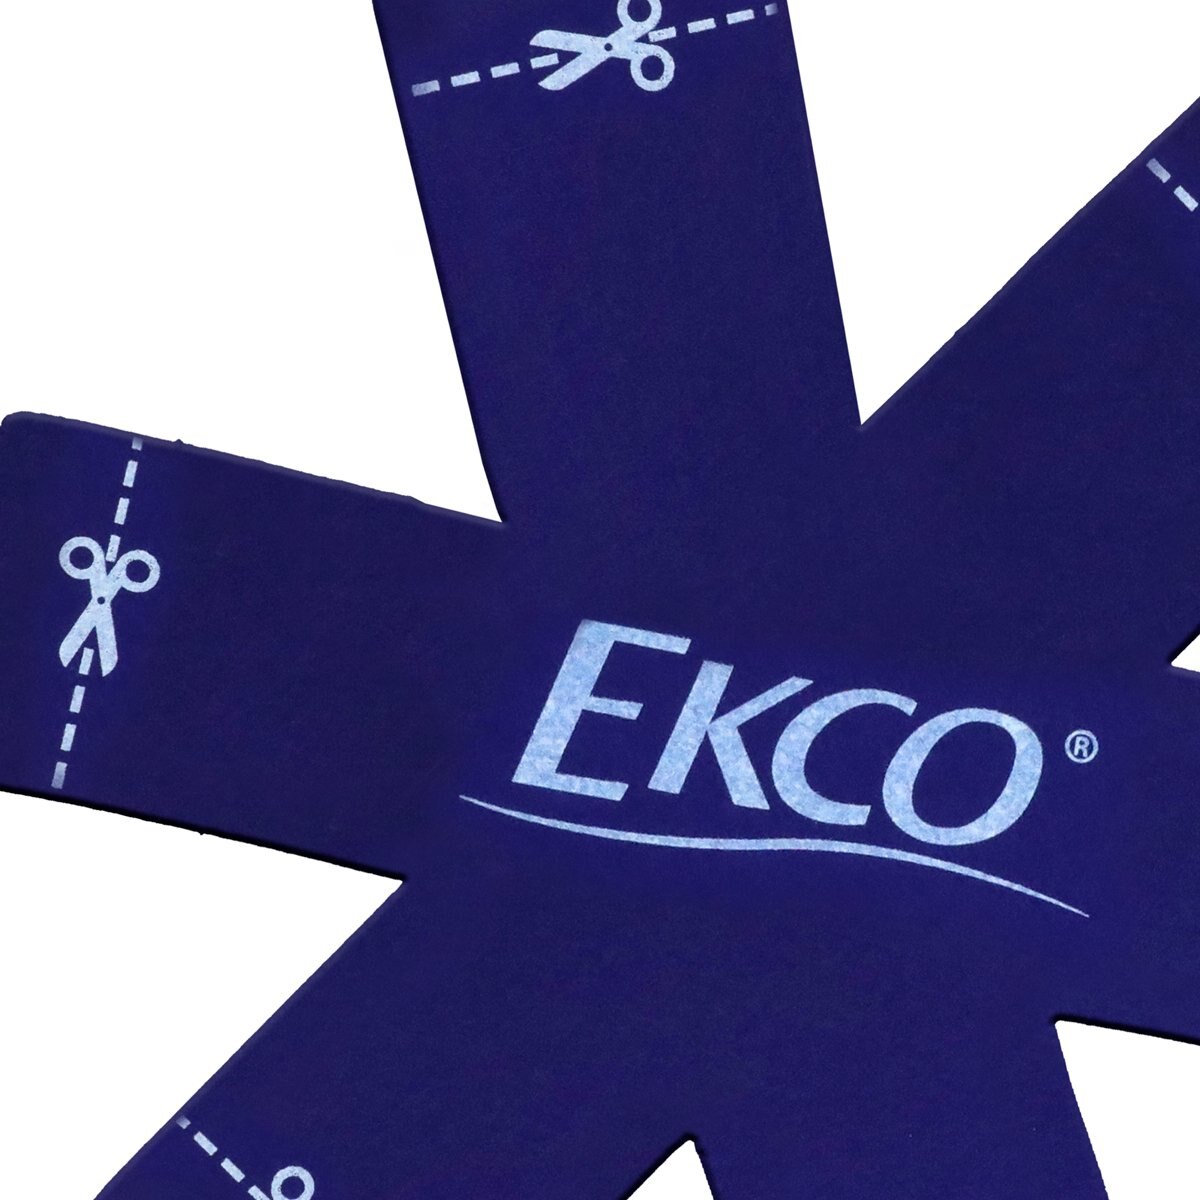 Sartén de Fieltro laminado marca Ekco